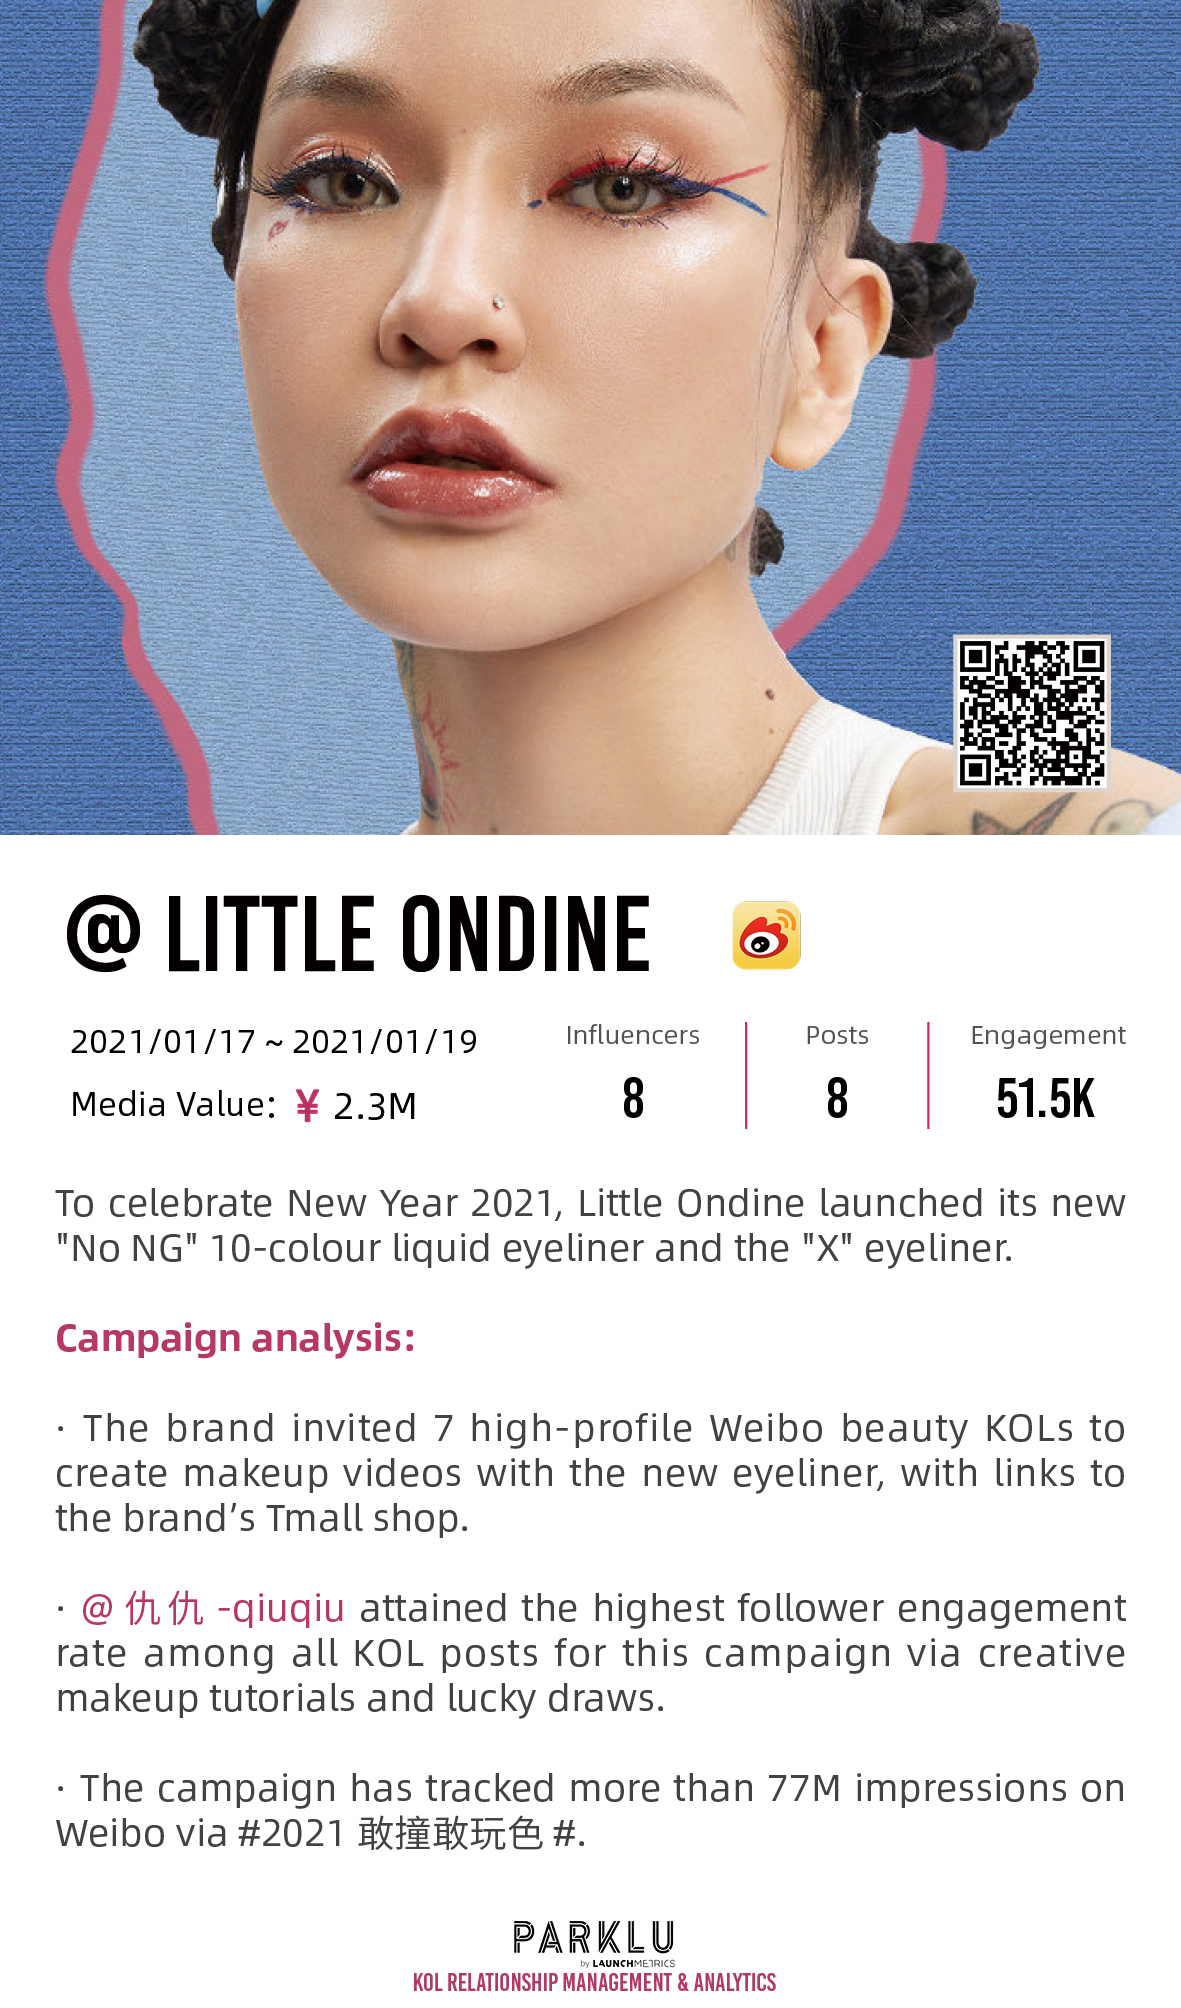 Little Ondine "No NG" Eyeliner